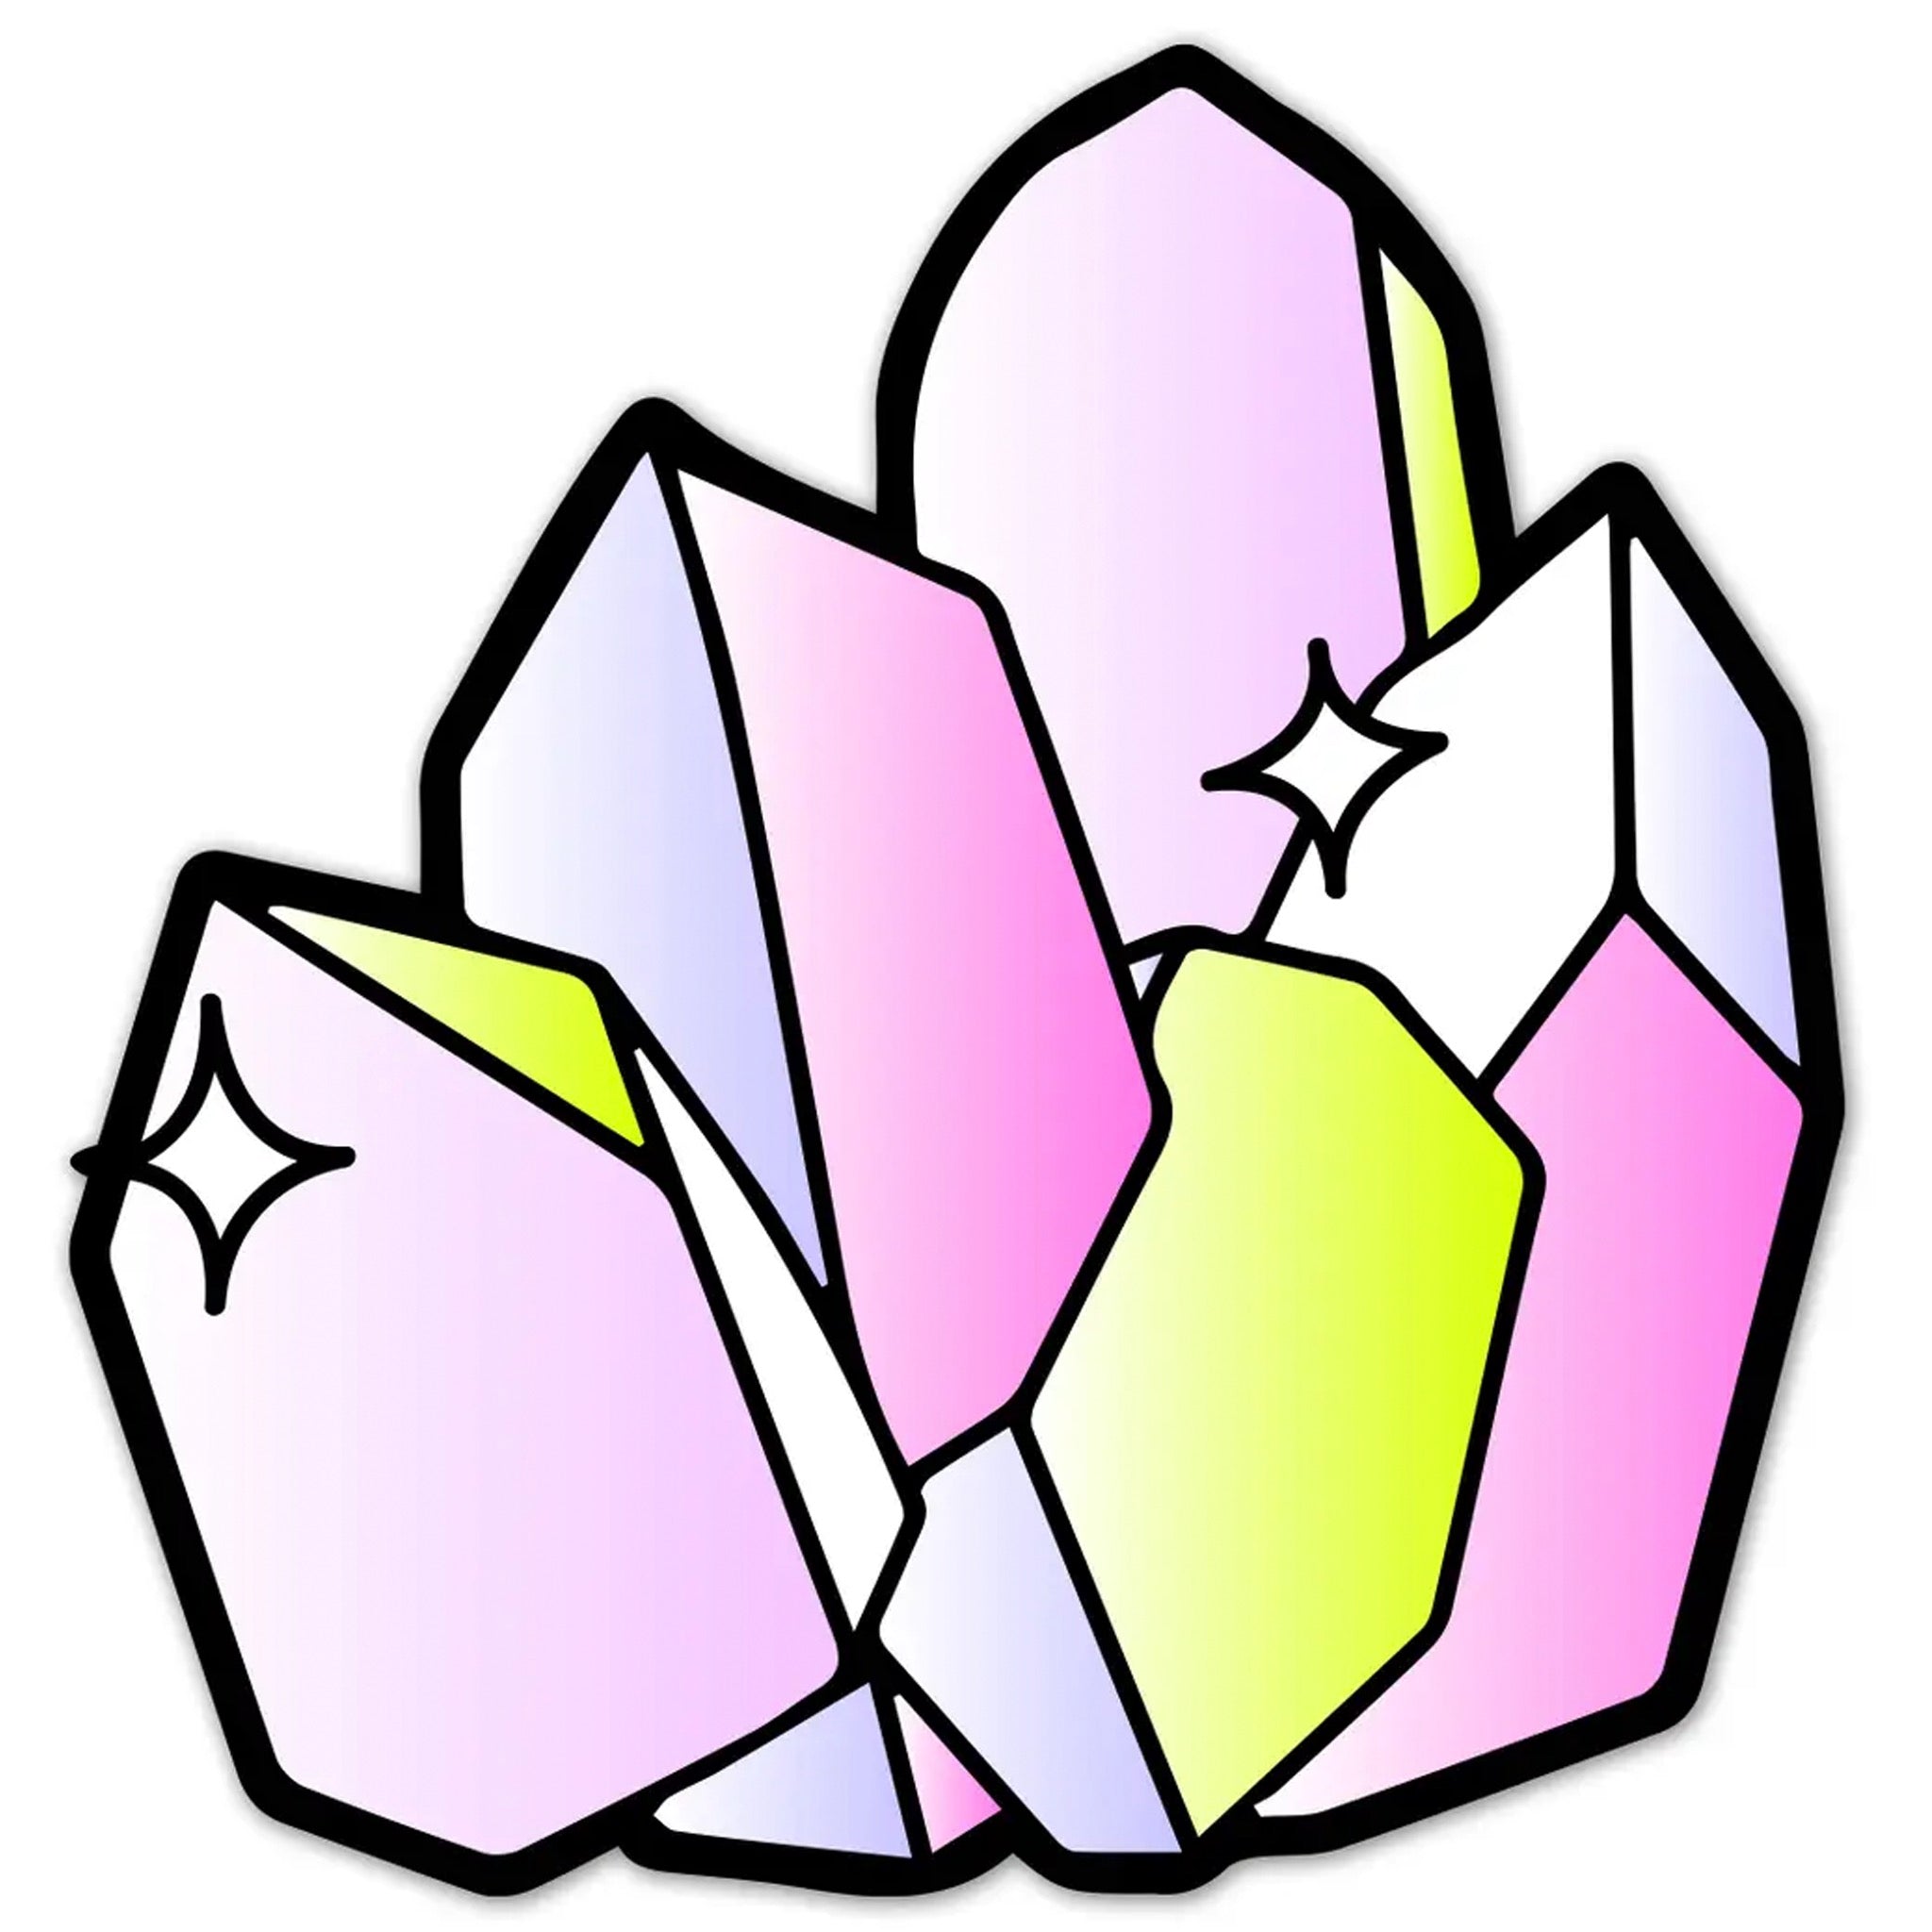 Crystal Stickers Crystals, Crystal Stickers Cartoons